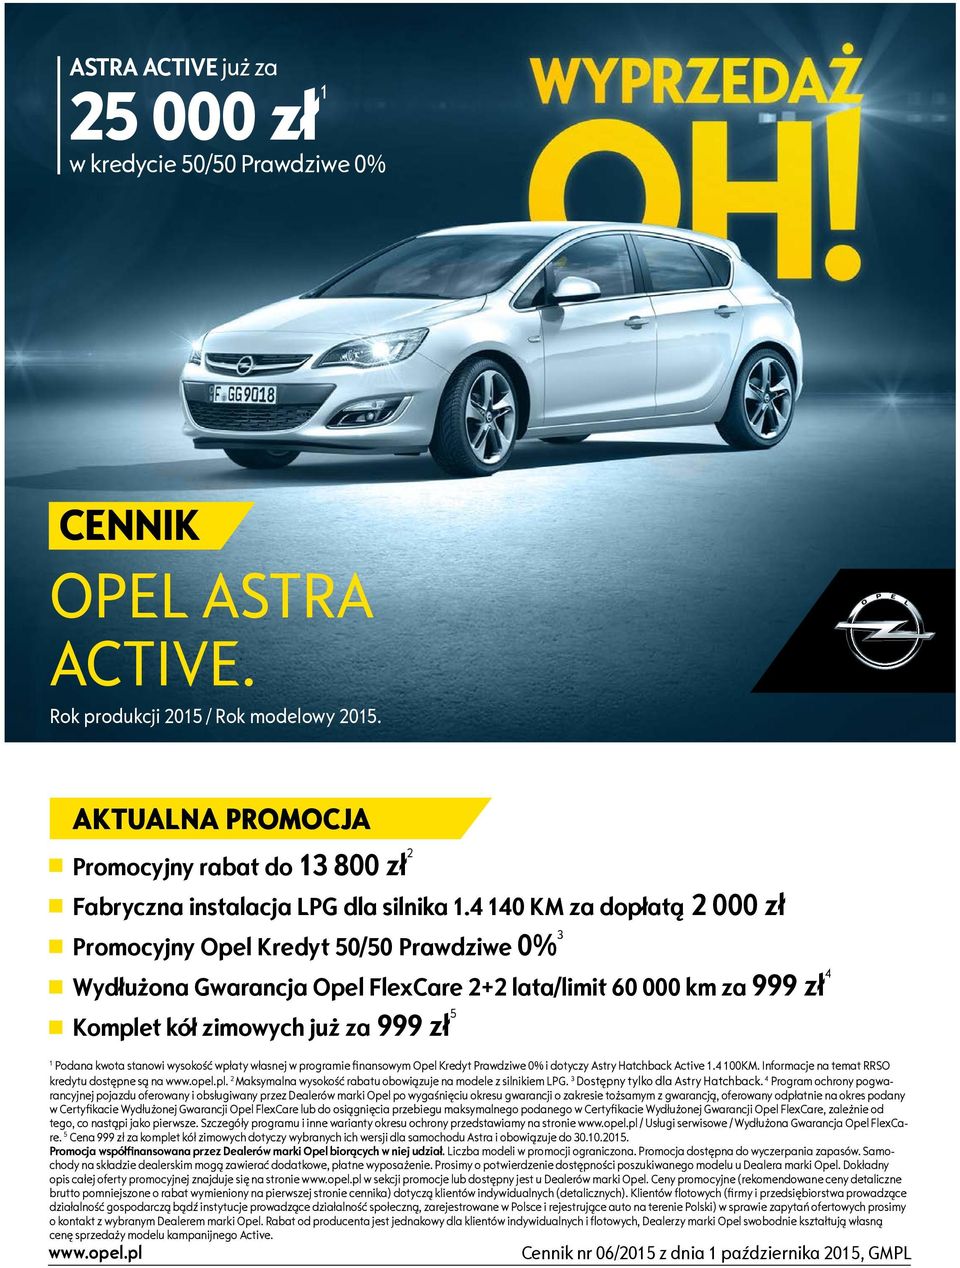 4 140 KM za dopłatą 2 000 zł Promocyjny Opel Kredyt 50/50 Prawdziwe 0% 3 Wydłużona Gwarancja Opel FlexCare 2+2 lata/limit 60 000 km za 999 zł 4 Komplet kół zimowych już za 999 zł 5 1 Podana kwota